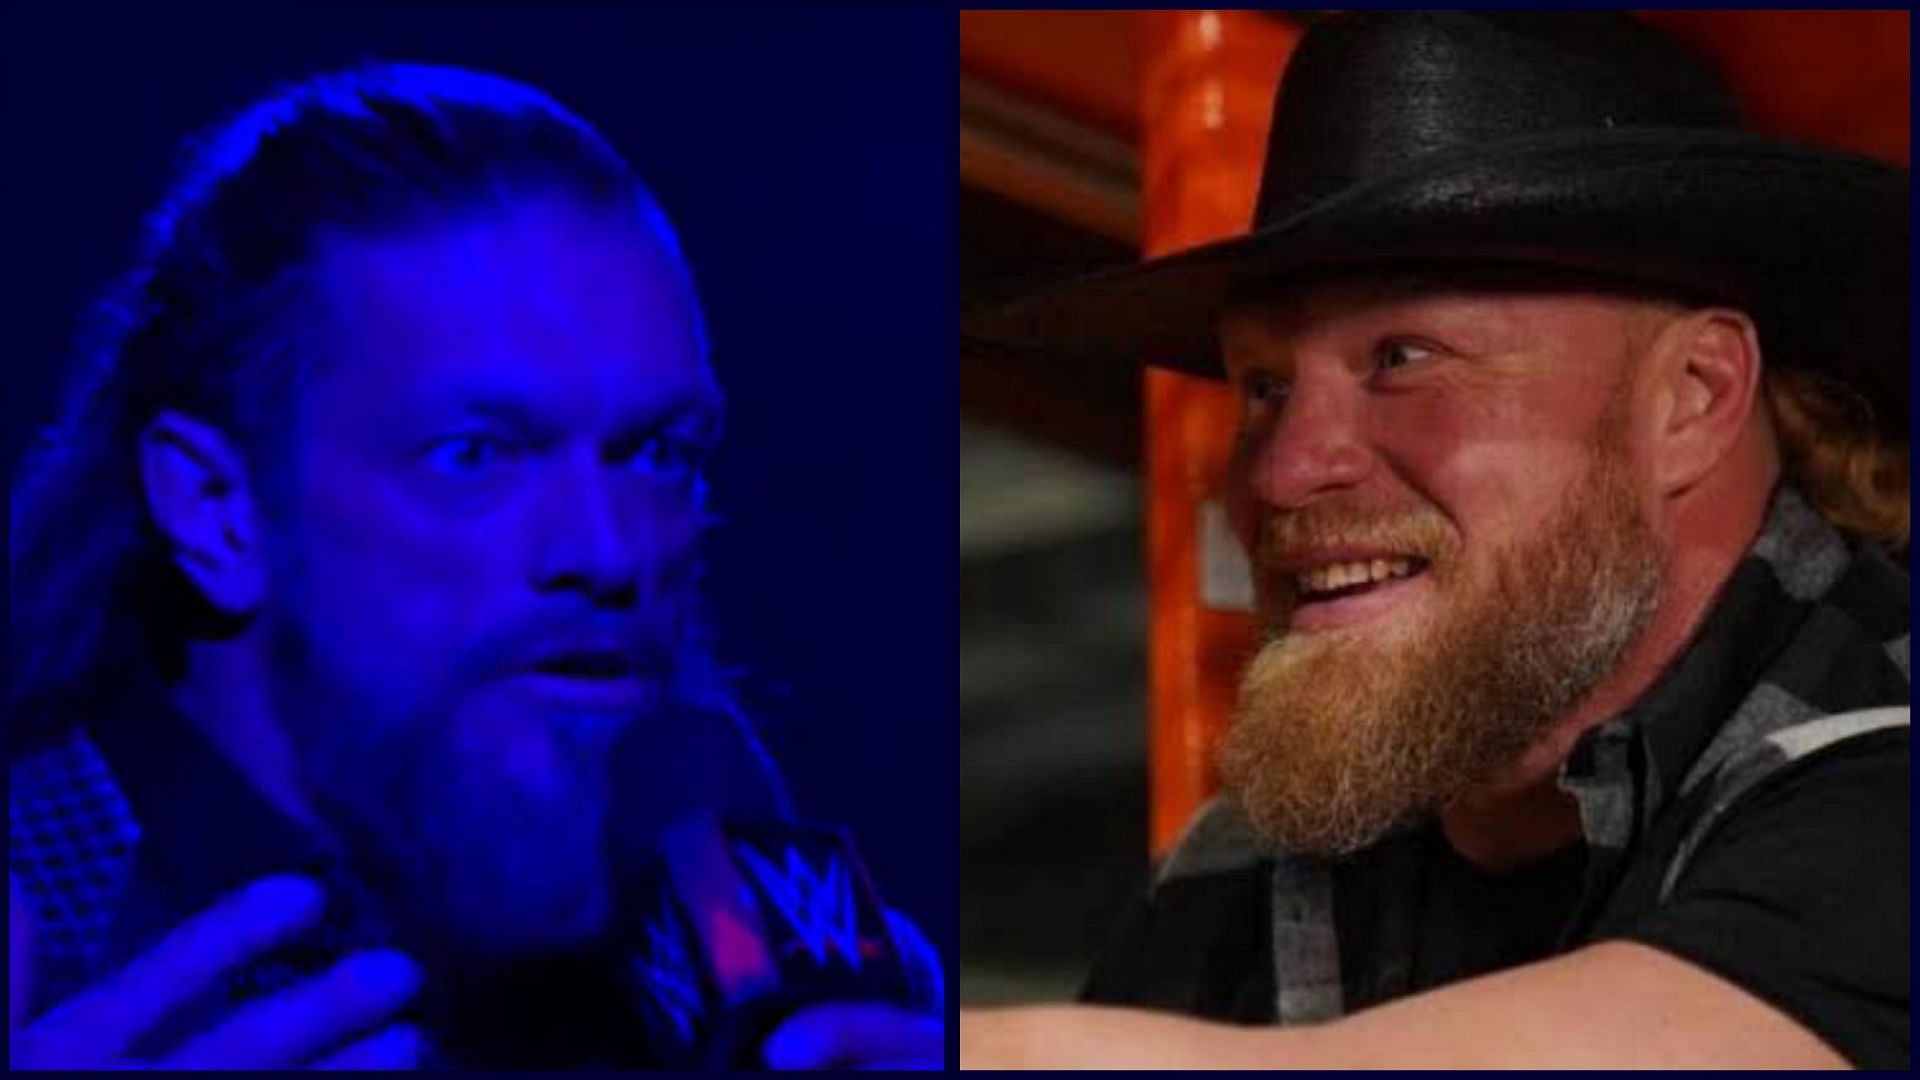 Edge at WWE RAW and Brock Lesnar at SmackDown.